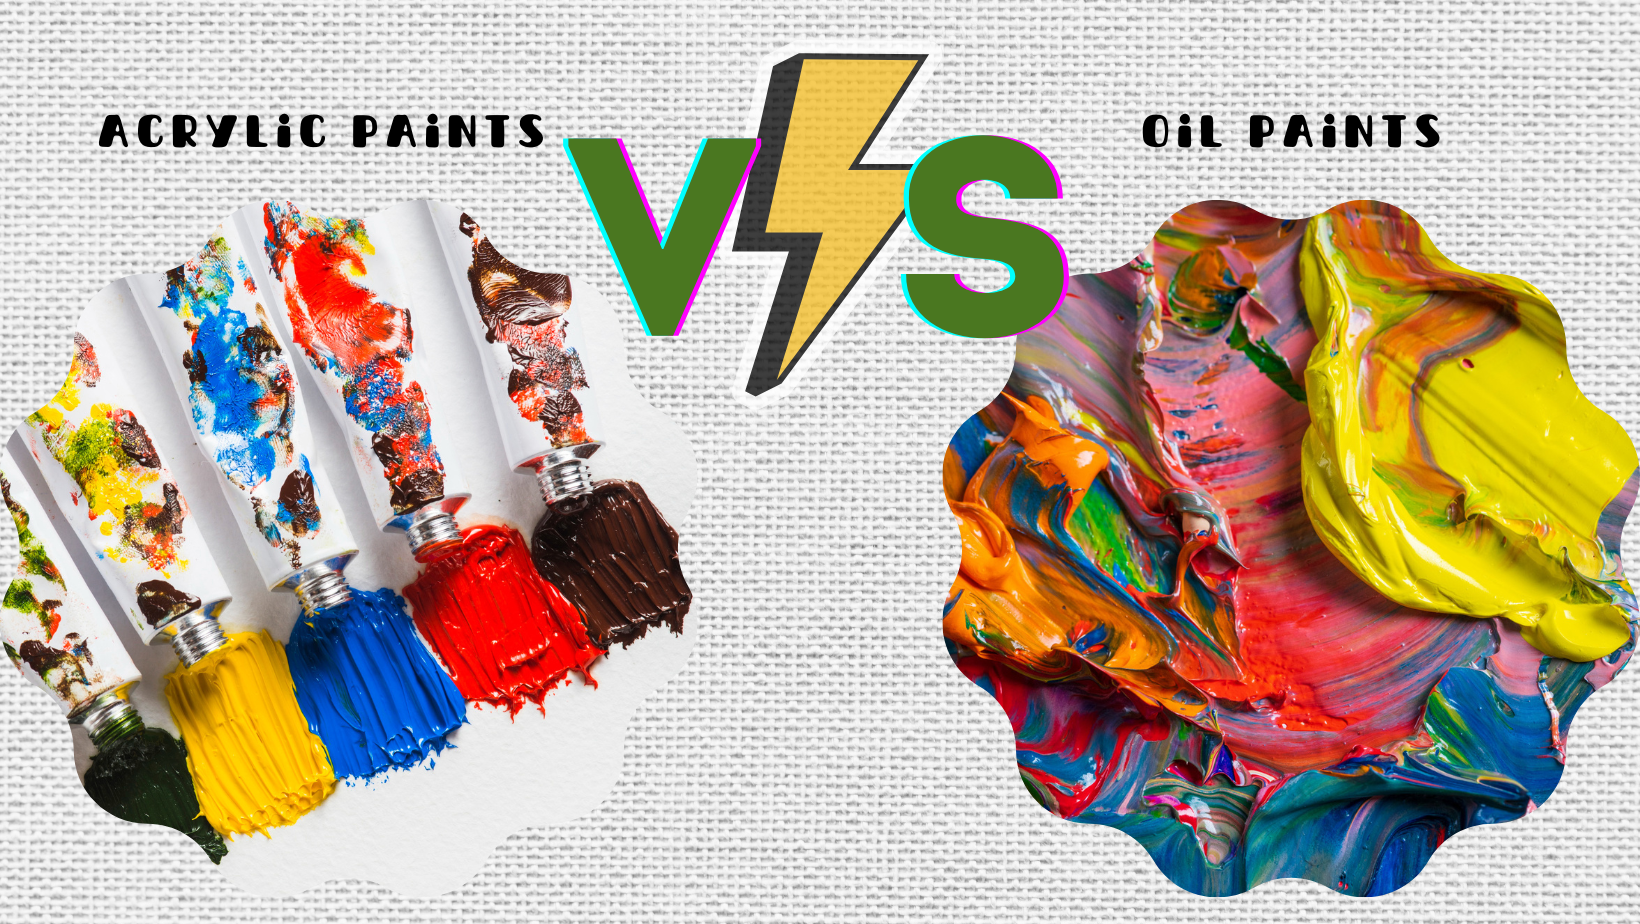 acrylic paints vs oil paints